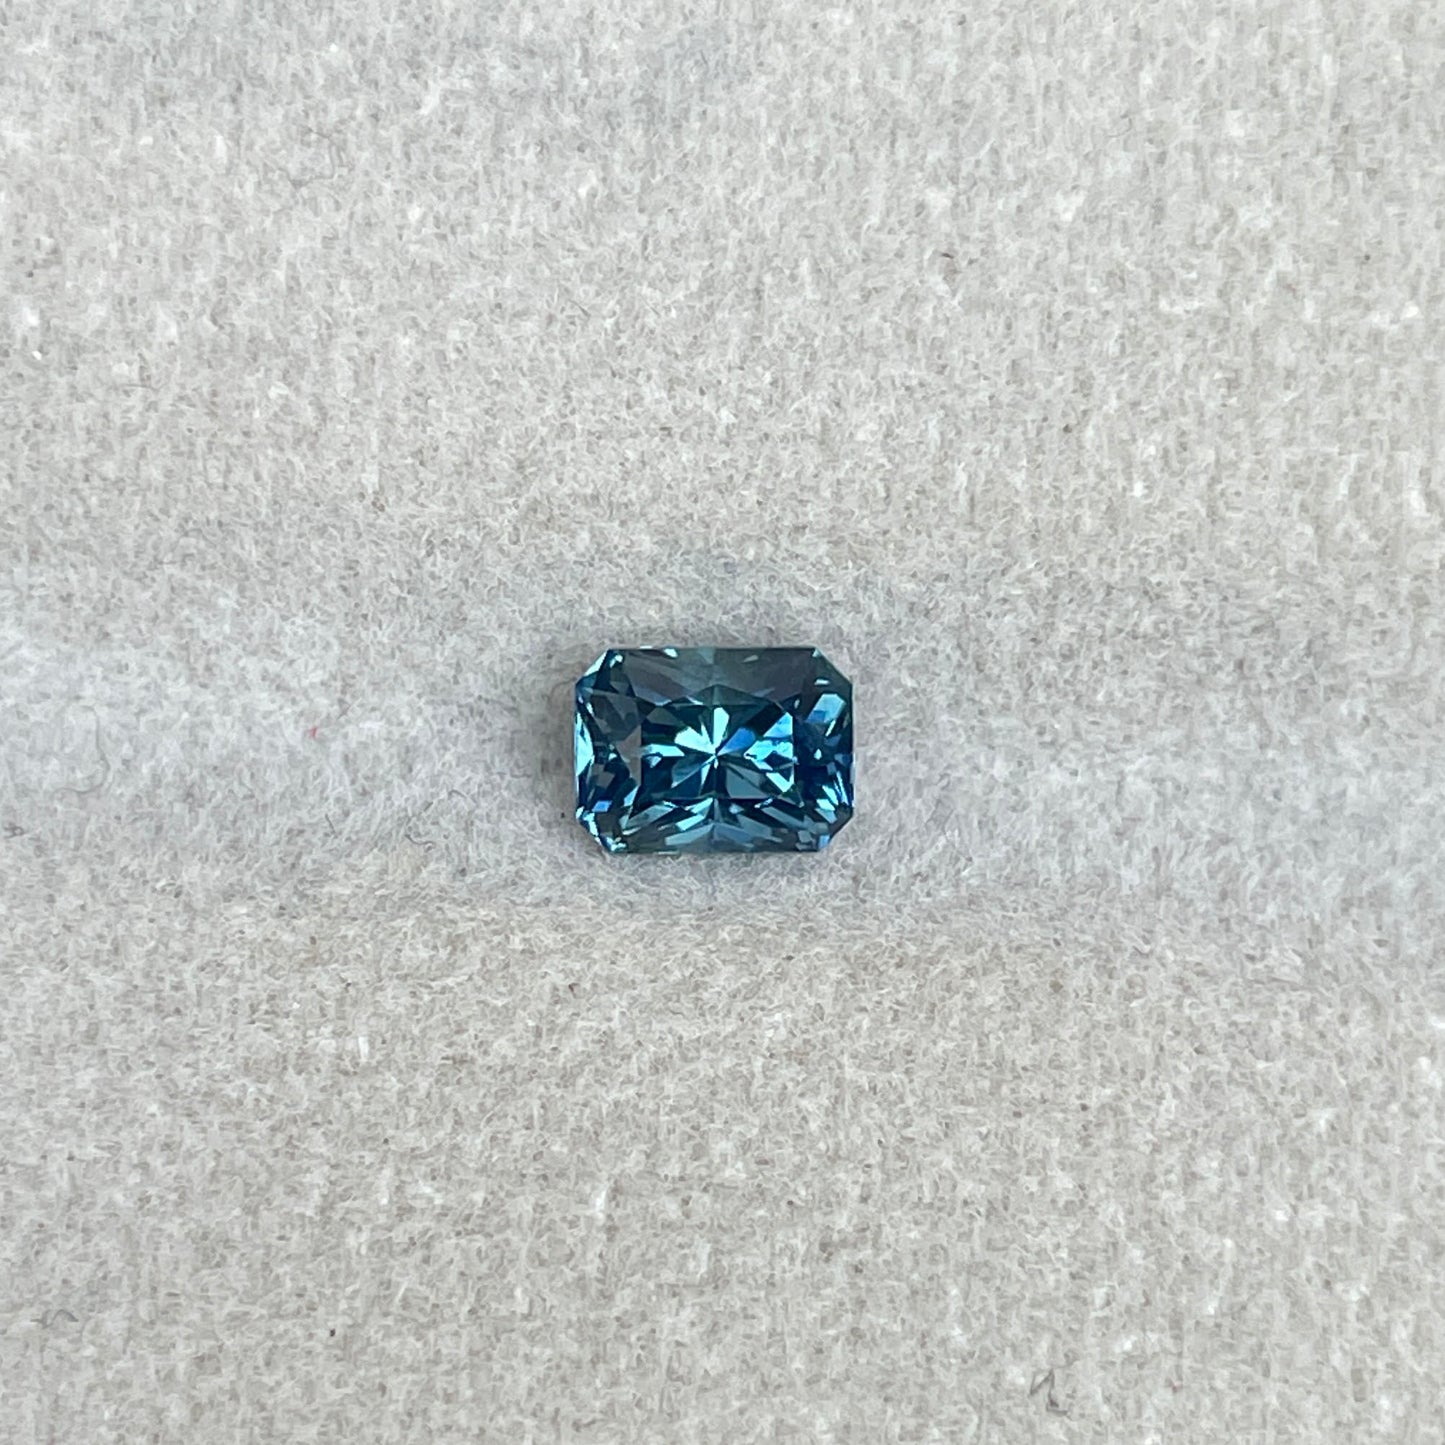 Teal sapphire, 0.92 crt.